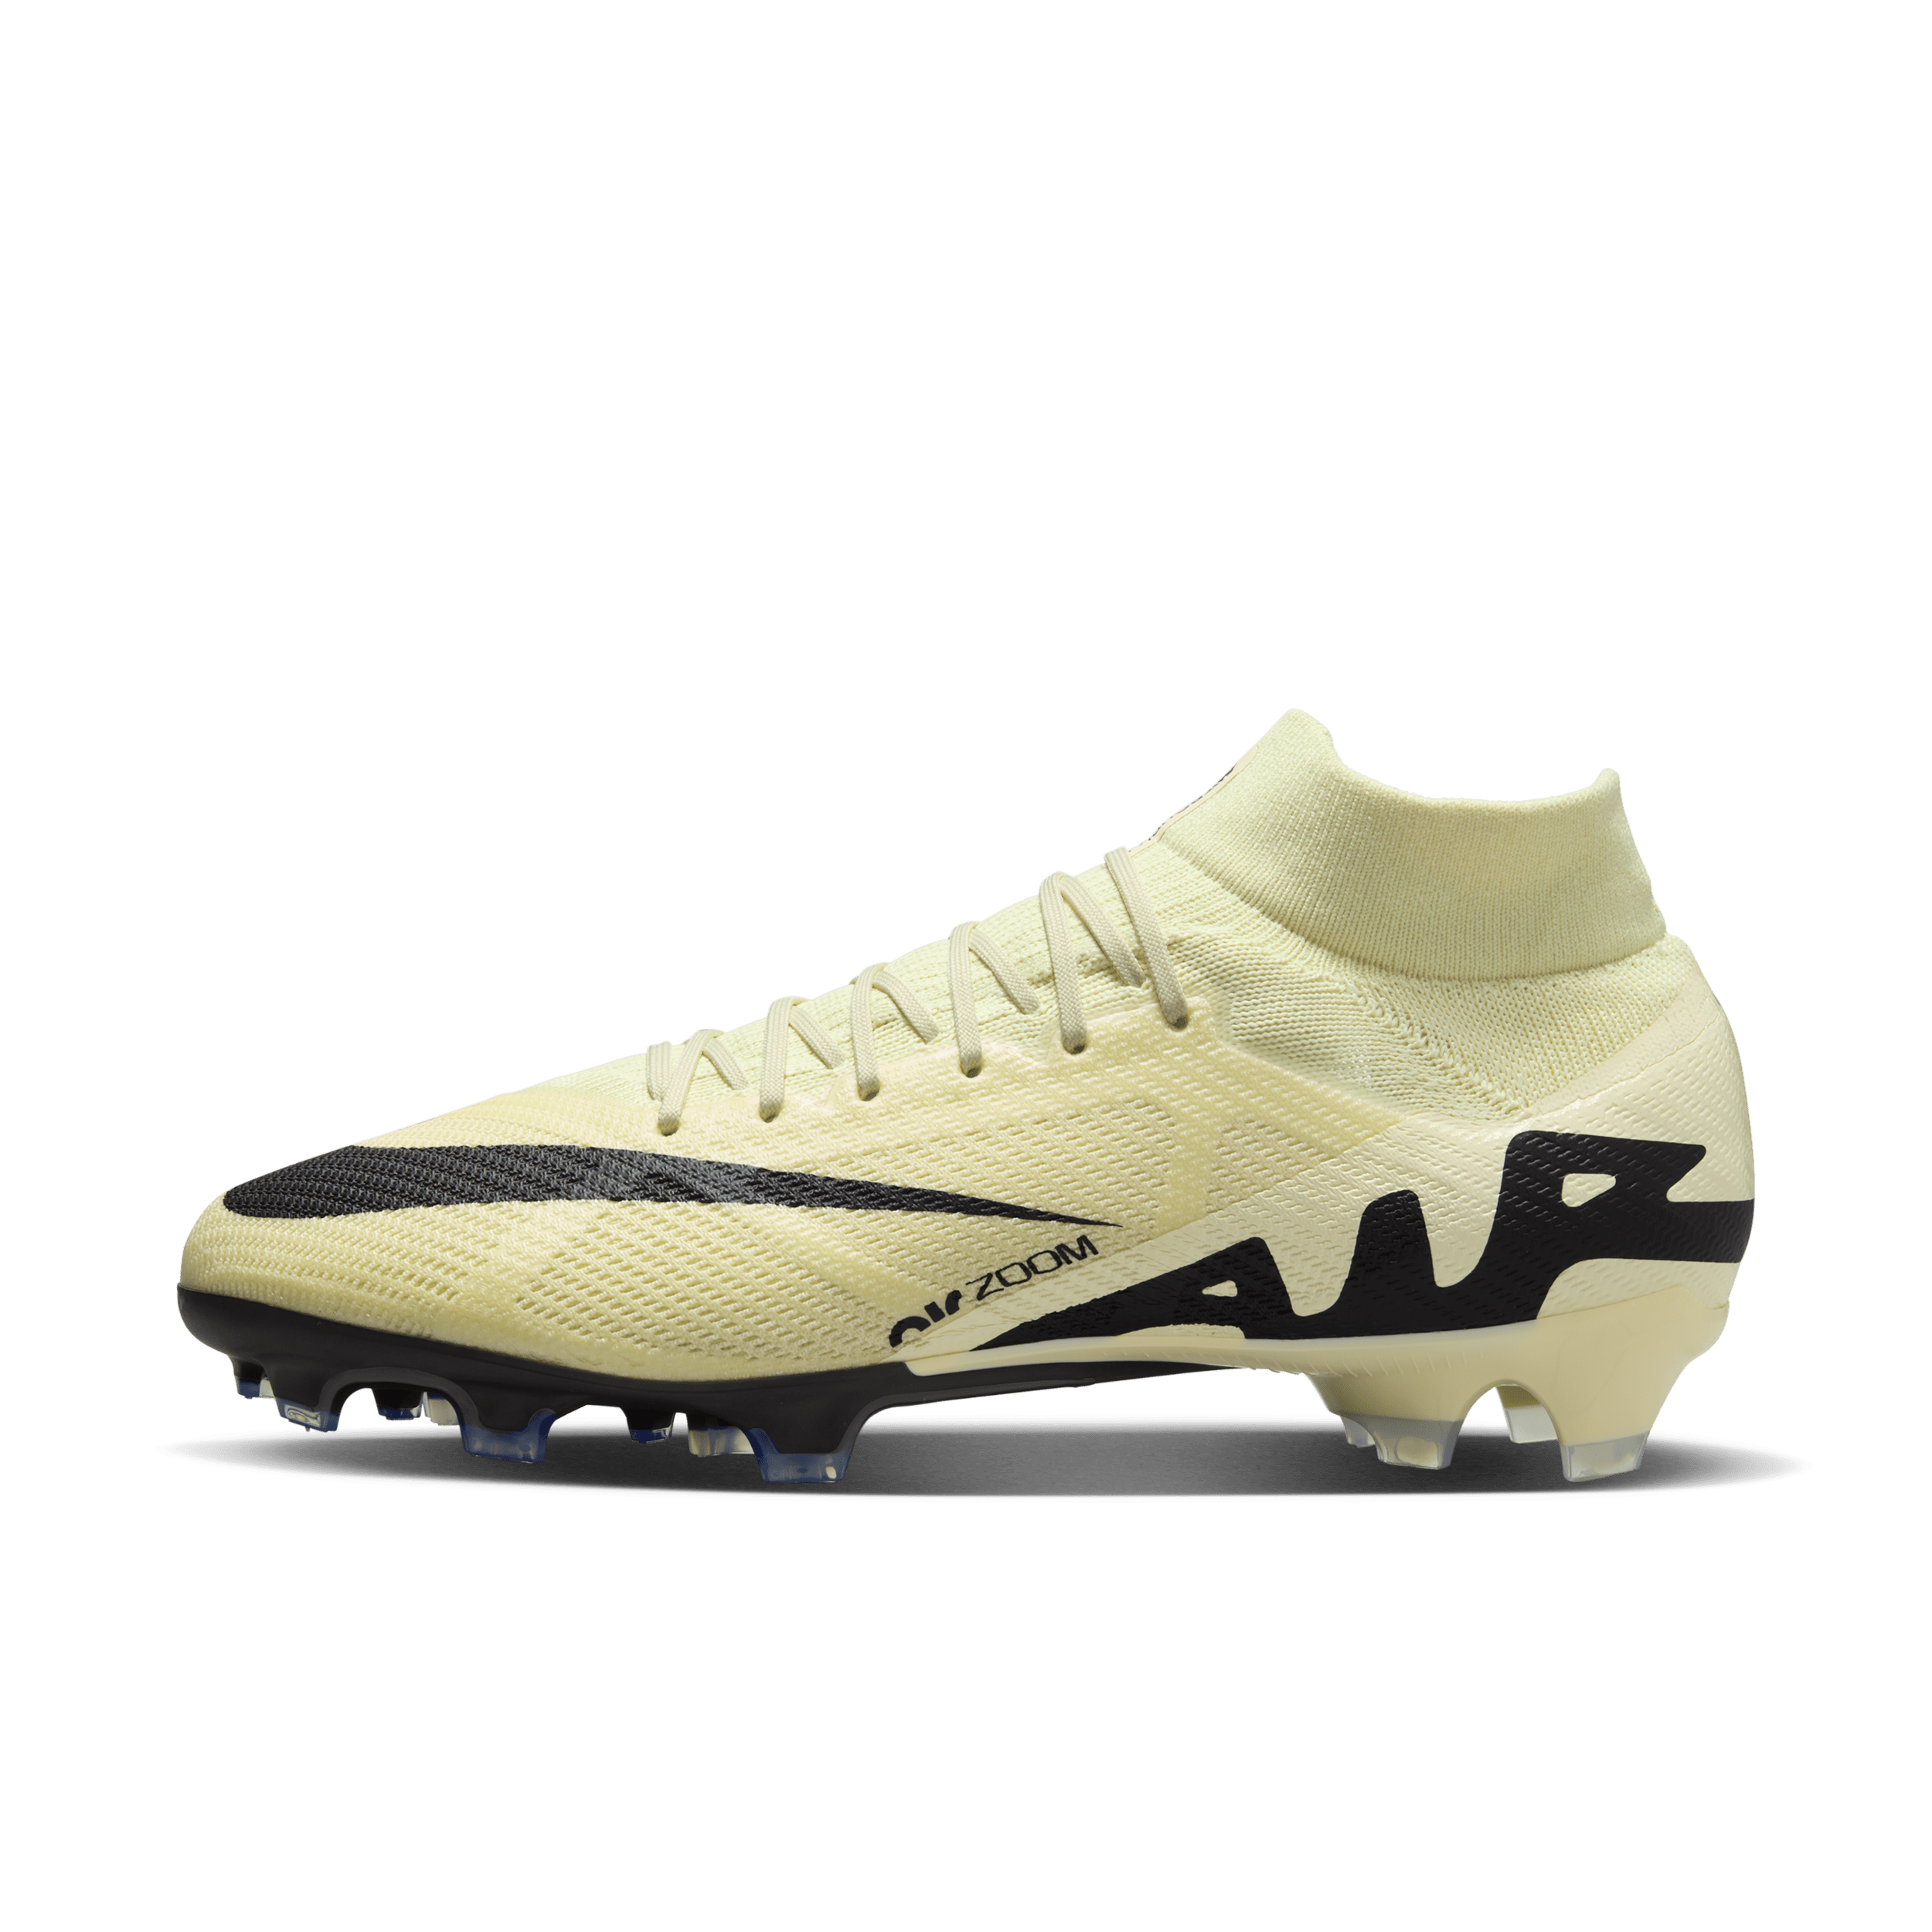 Nike Mercurial Superfly 9 Pro high top voetbalschoenen (stevige ondergrond) - Geel